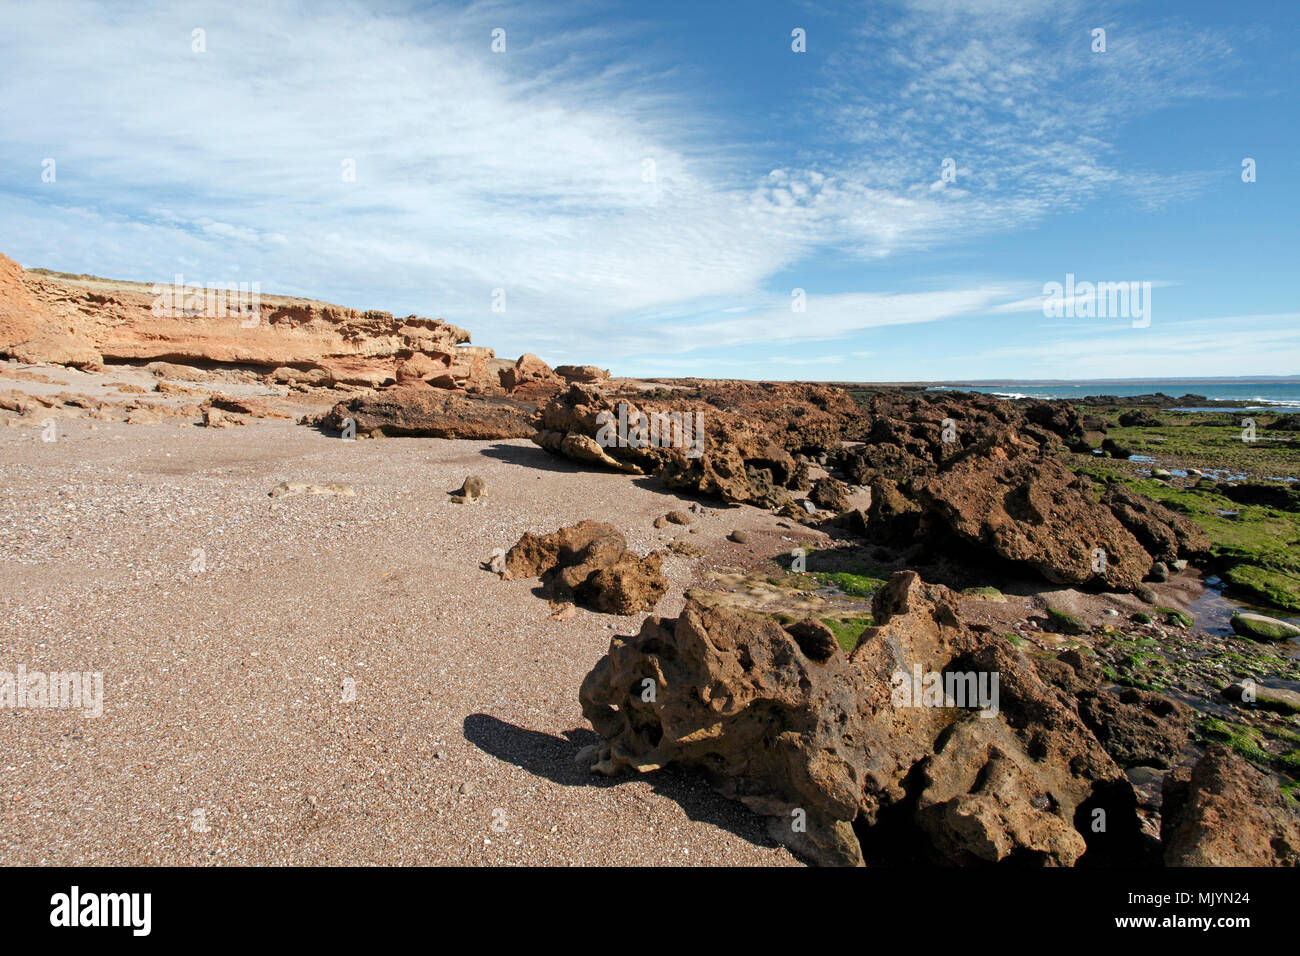 La géologie et les caractéristiques géologiques et la structure du roc sur la plage et la côte de Cabo Dos Bahias, près de Camarones, la Province de Chubut, en Argentine, en Patagonie. Banque D'Images